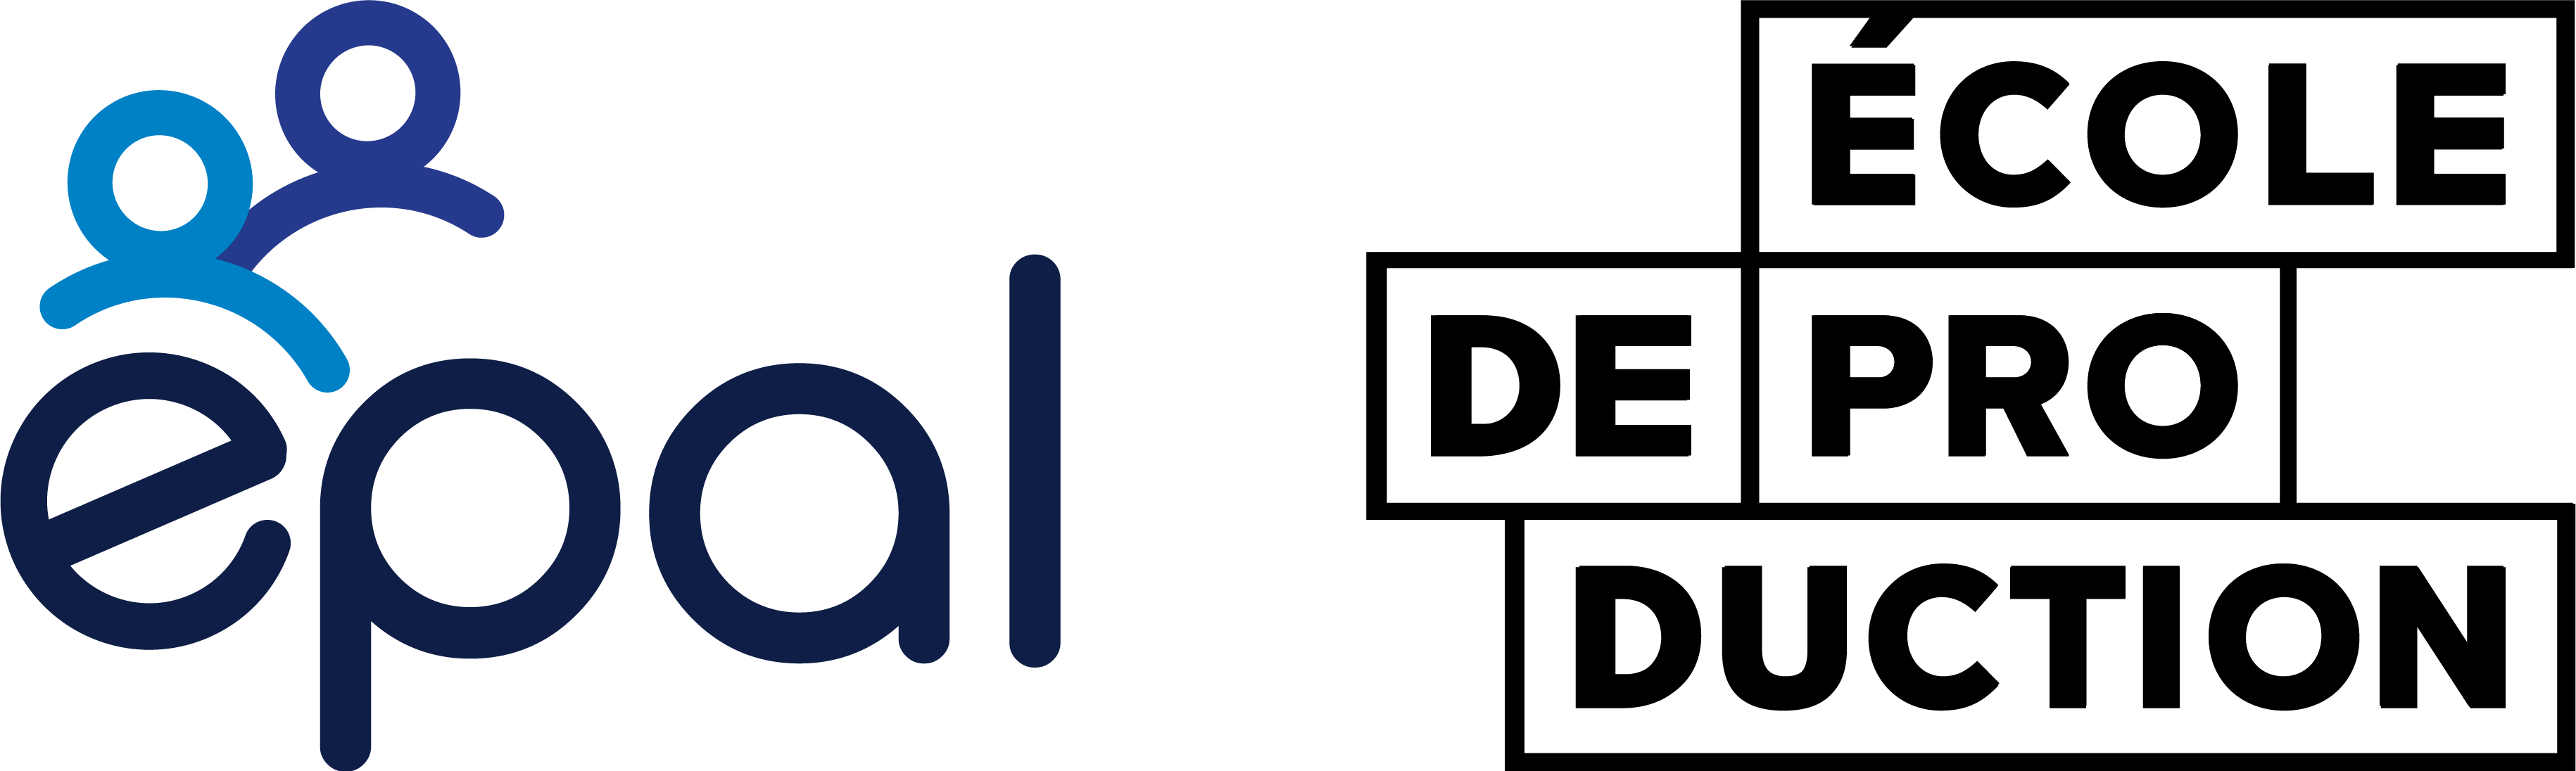 Logo de l'EPAL - Symbole de l'École de Production Automobile de Lens